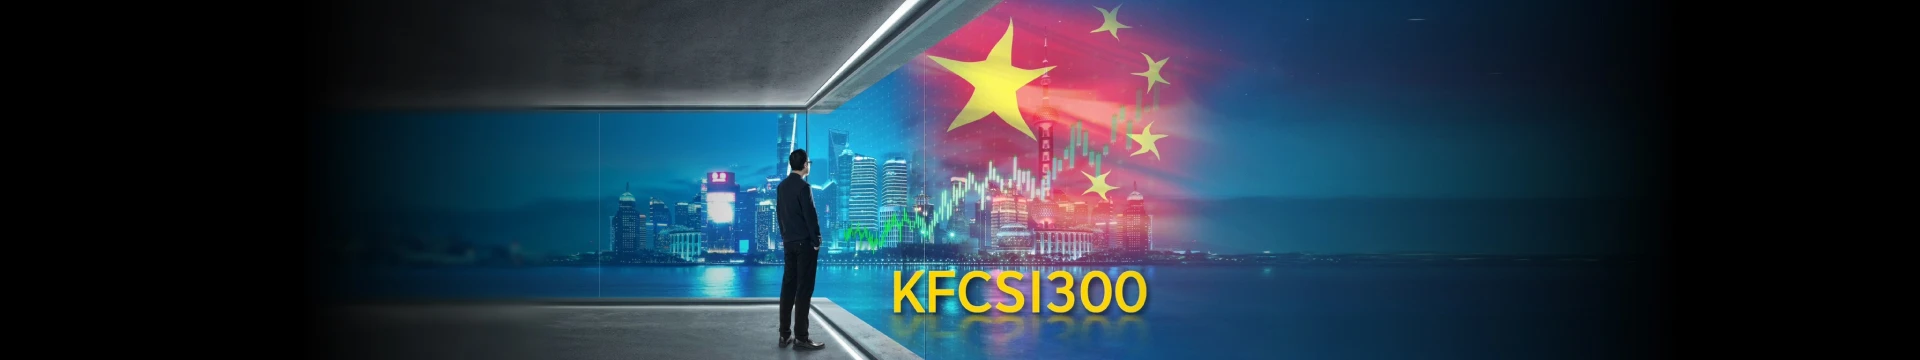 KFCSI300